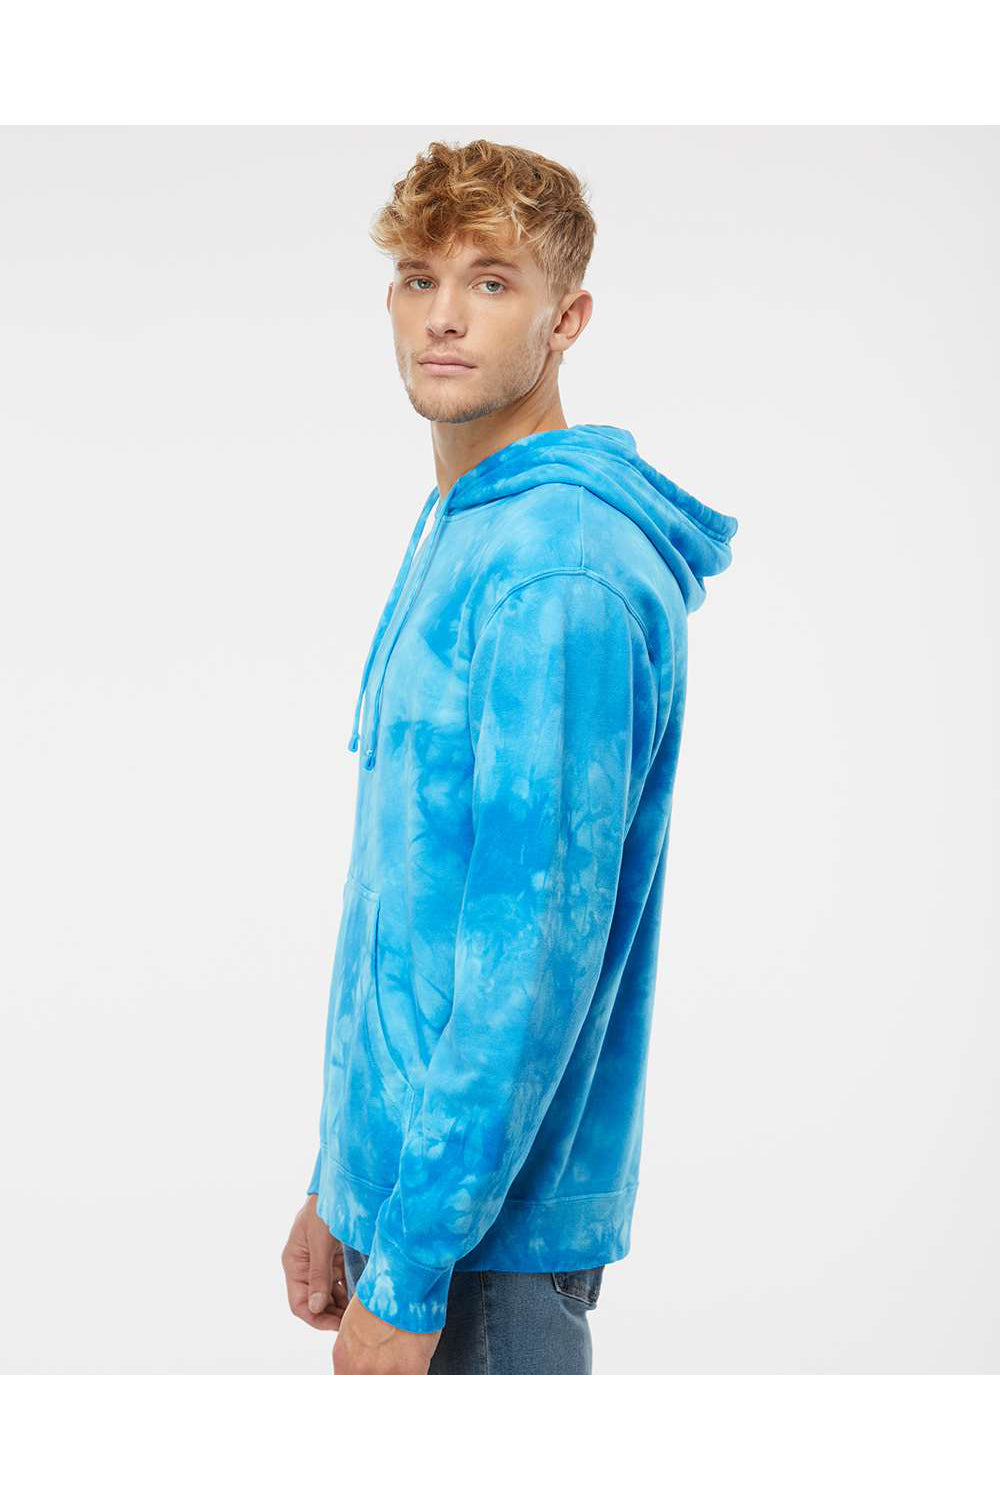 Independent Trading Co. PRM4500TD Mens Tie-Dye Hooded Sweatshirt Hoodie Aqua Blue Model Side